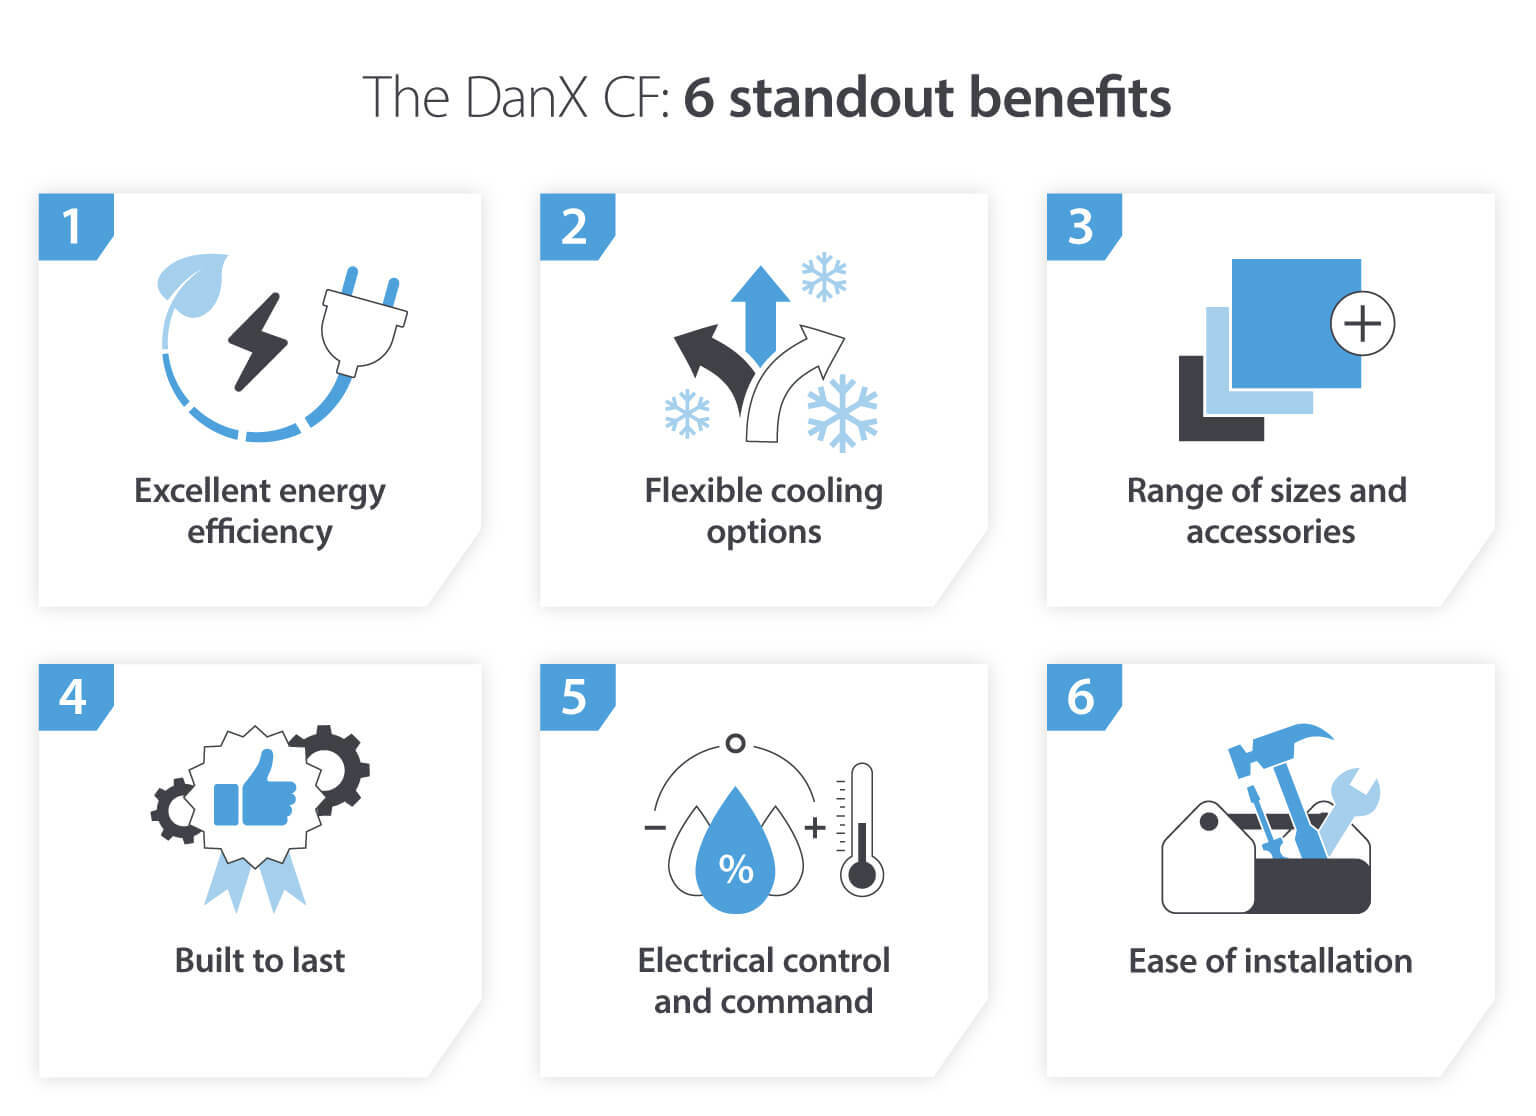 DanX CF 6 standout benefits